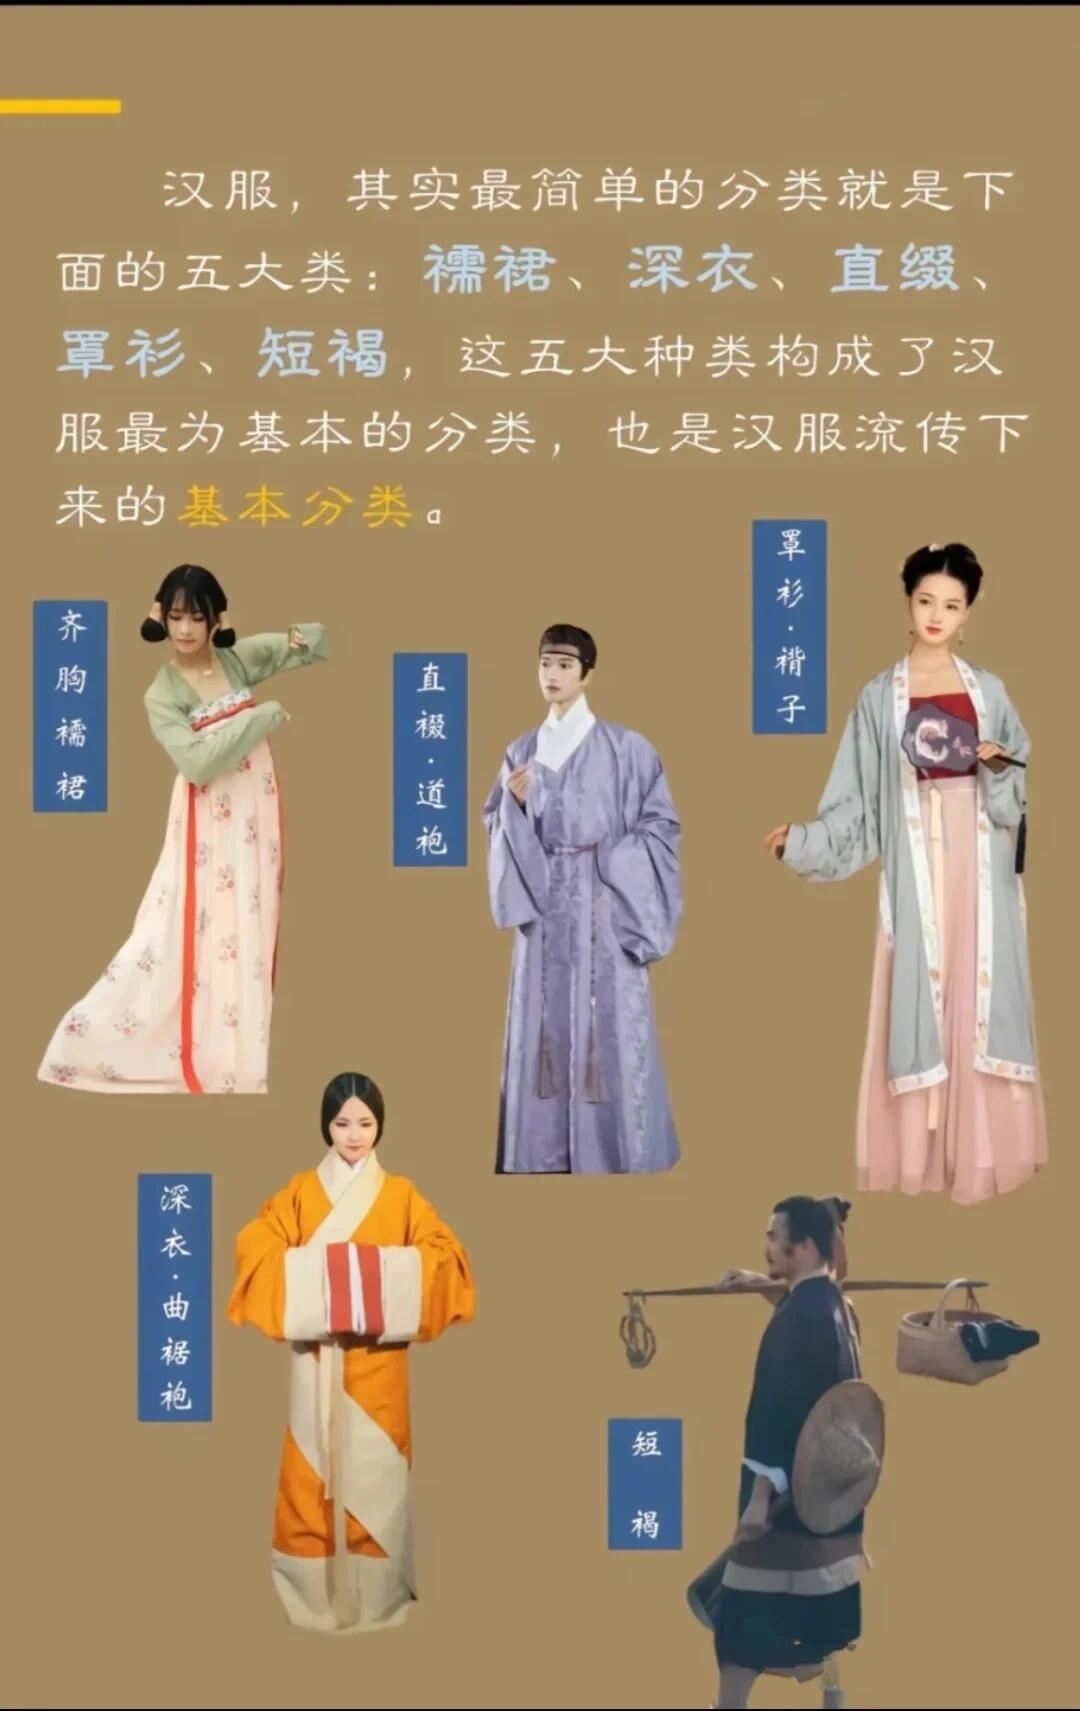 汉服,作为中华传统服饰的代表,有着深厚的历史文化内涵 起源悠久